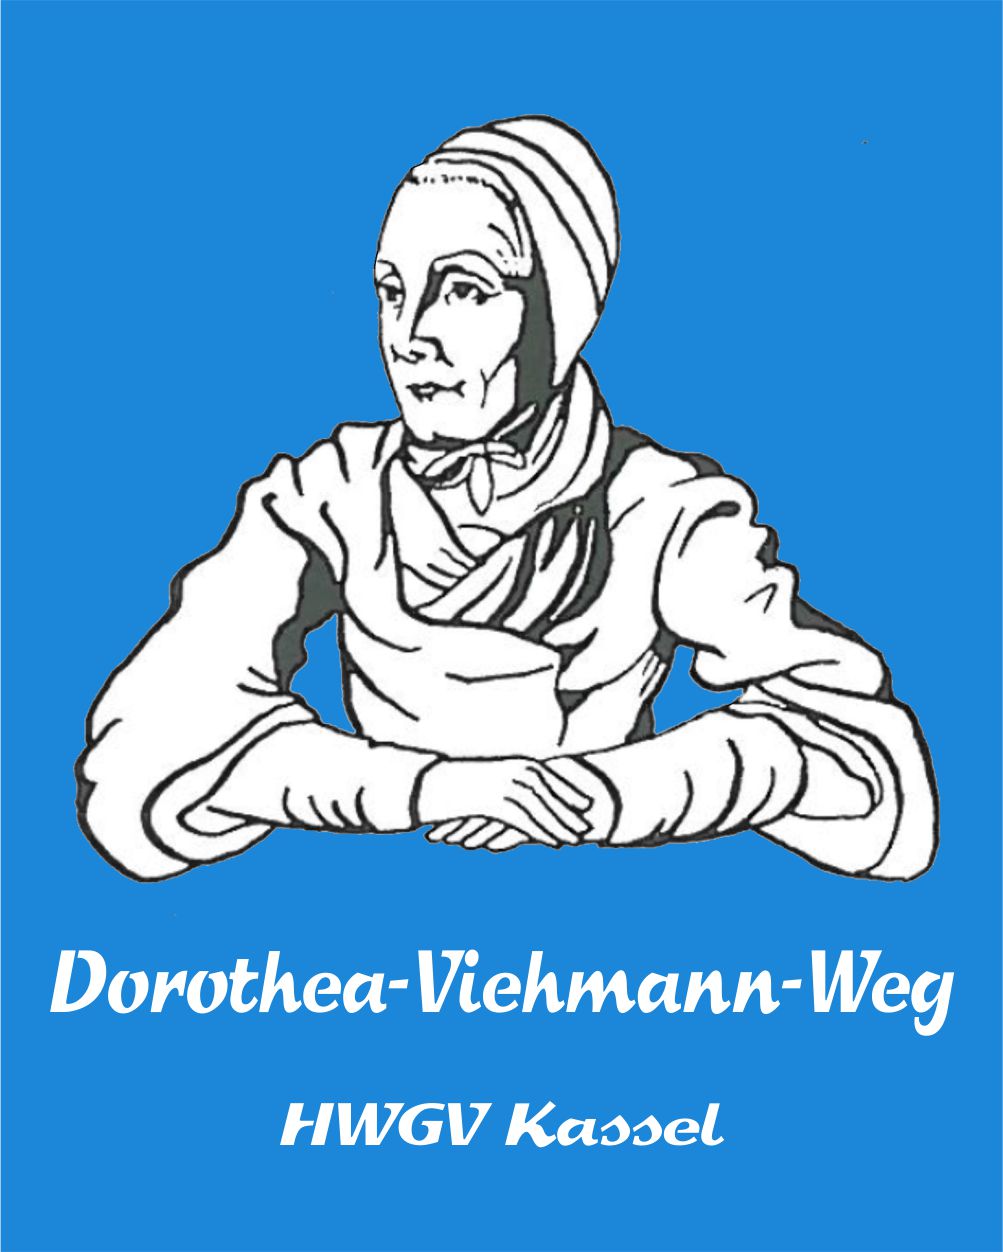 Dorothea-Viehmann-Weg